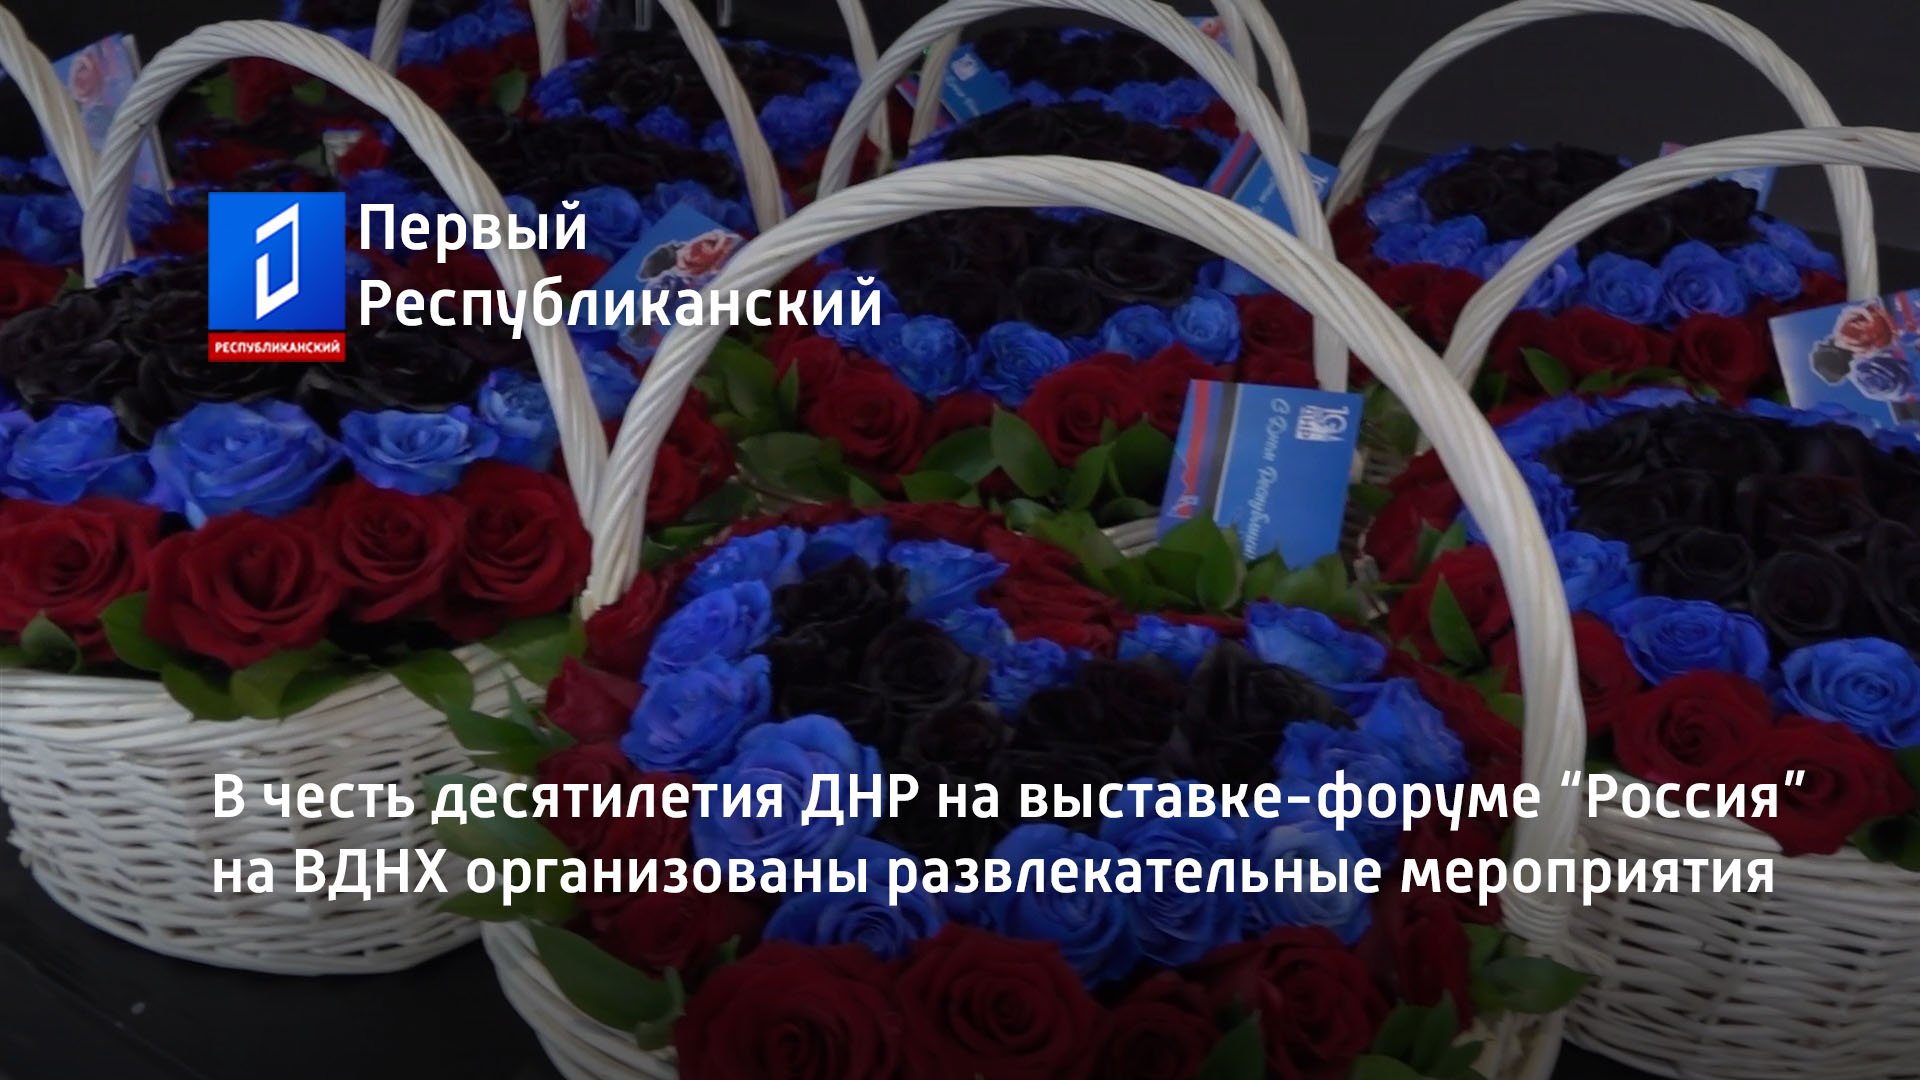 В честь десятилетия ДНР на выставке-форуме “Россия” на ВДНХ организованы развлекательные мероприятия